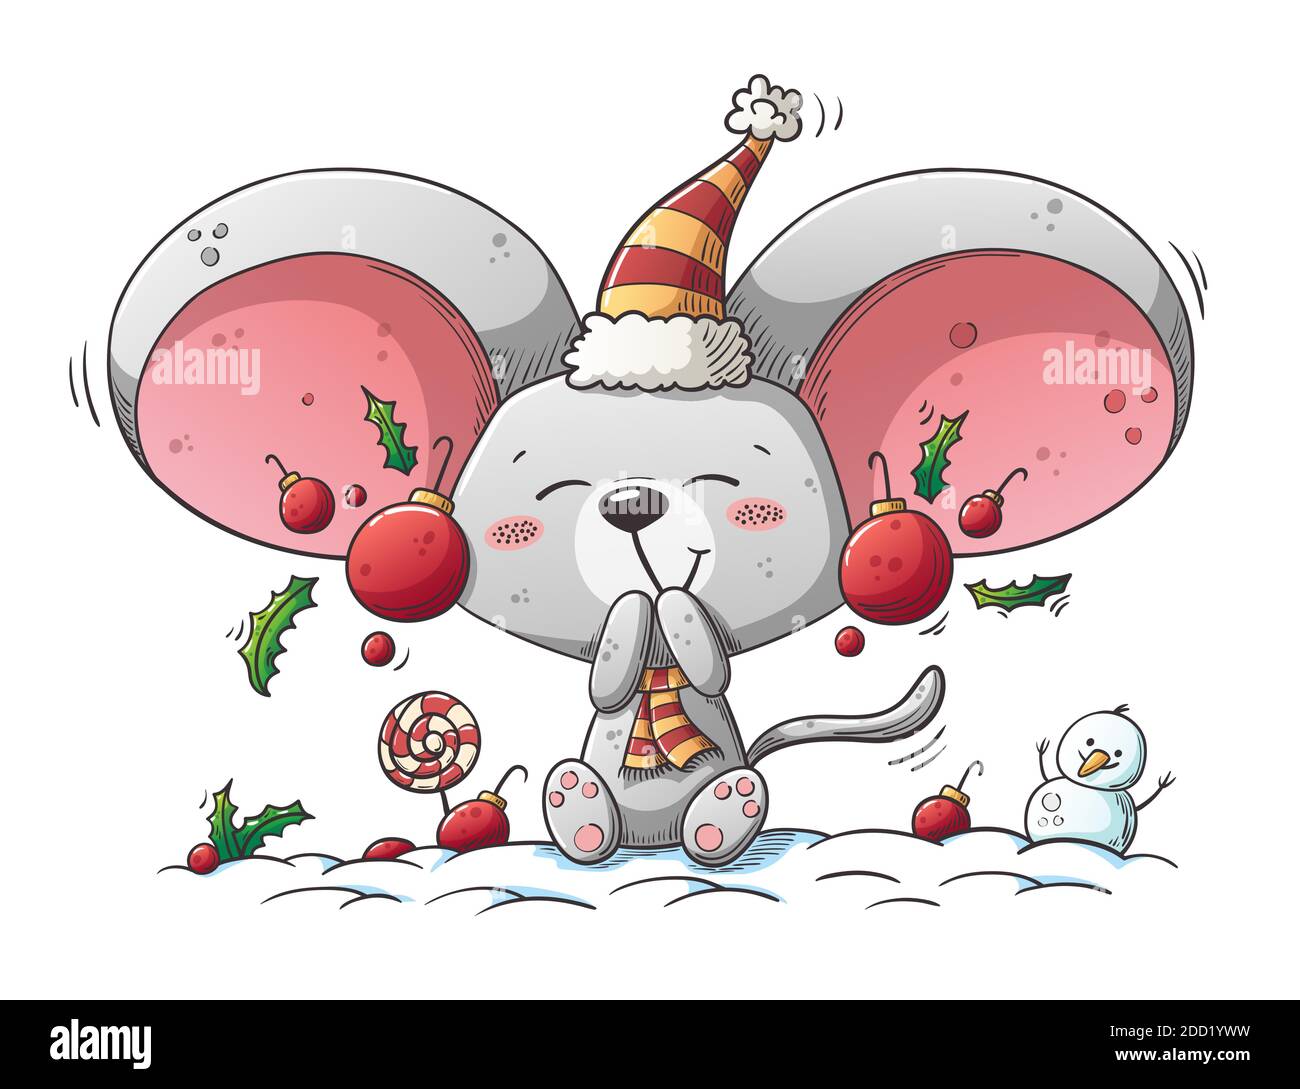 Niedliche weihnachten Maus. Handgezeichnete Vektorgrafik mit separaten Ebenen. Stock Vektor